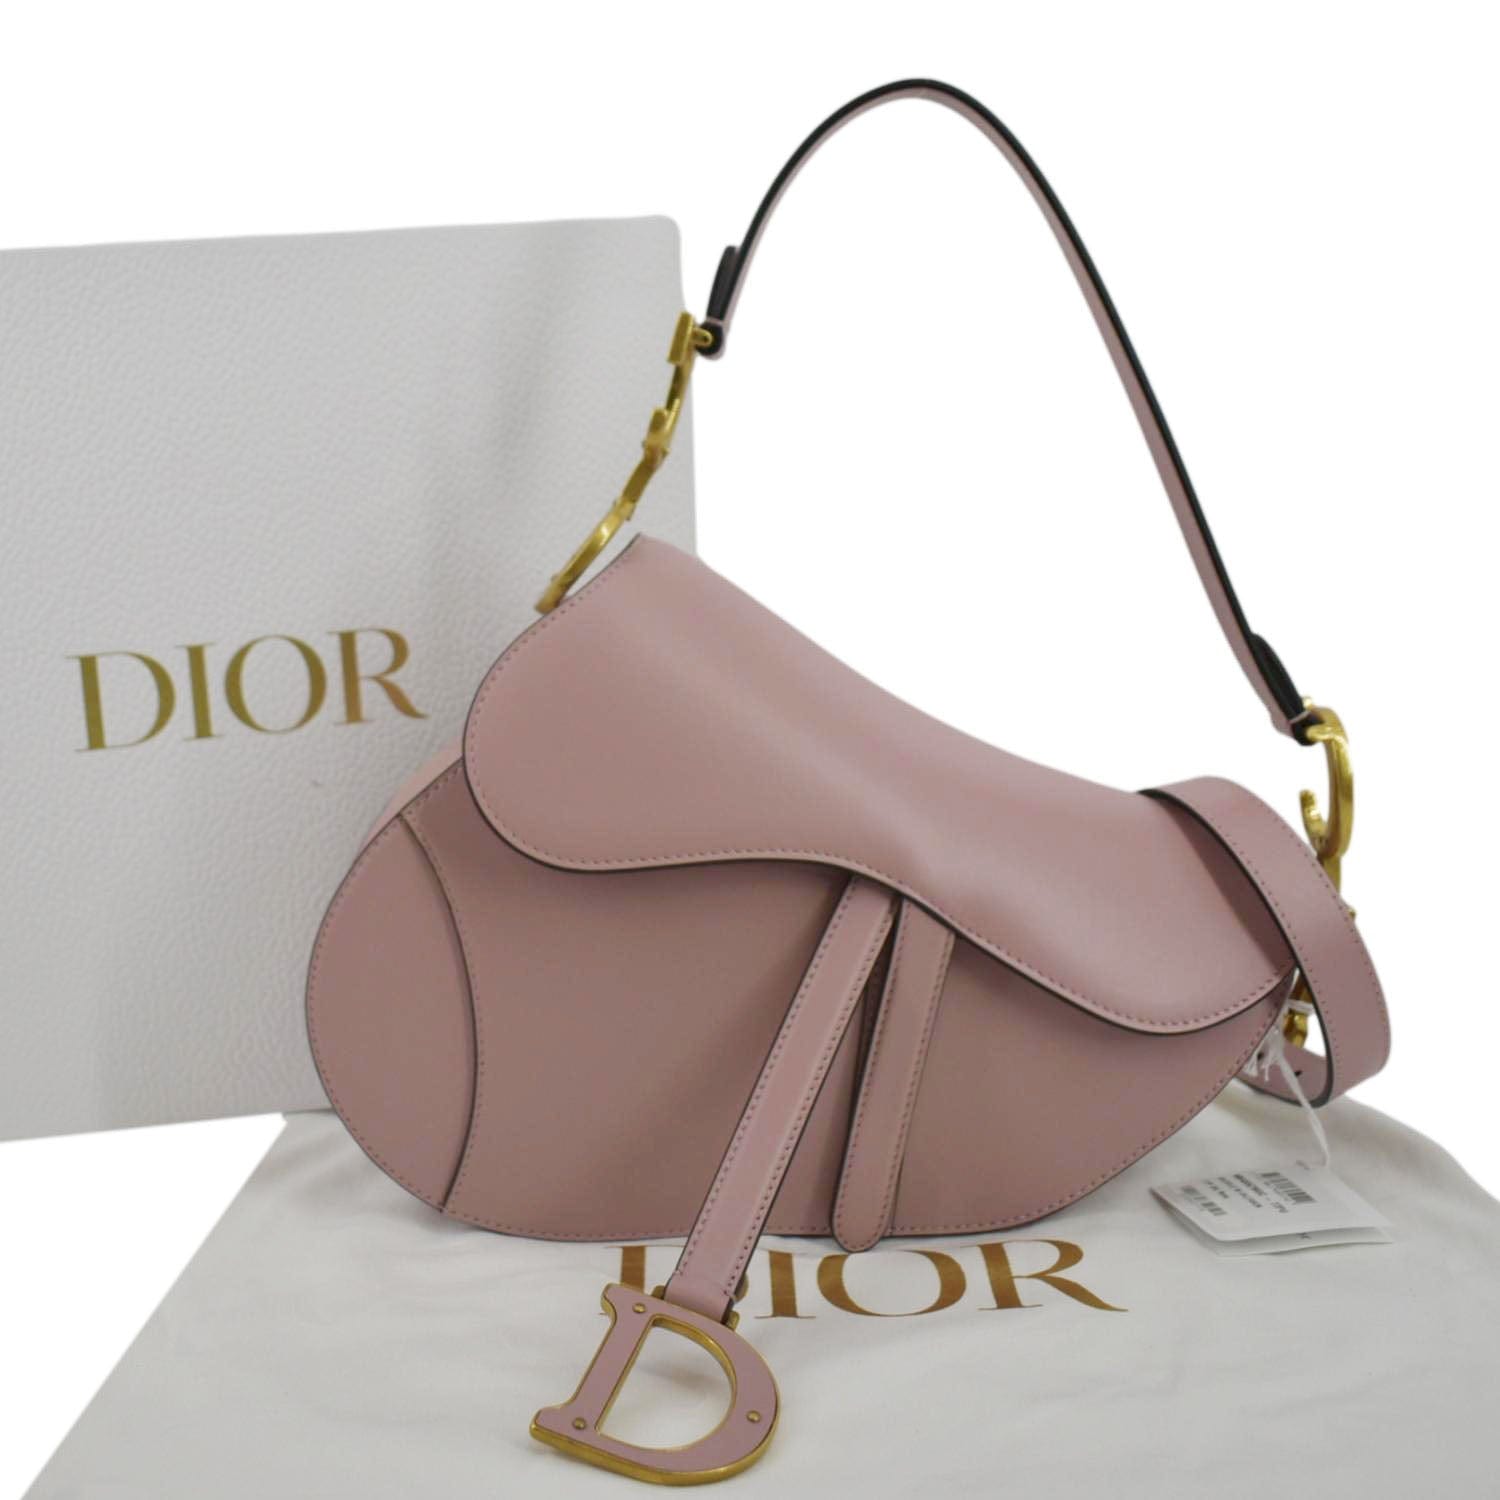 Christian Dior Saddle Smooth Calfskin Leather Satchel Shoulder Bag